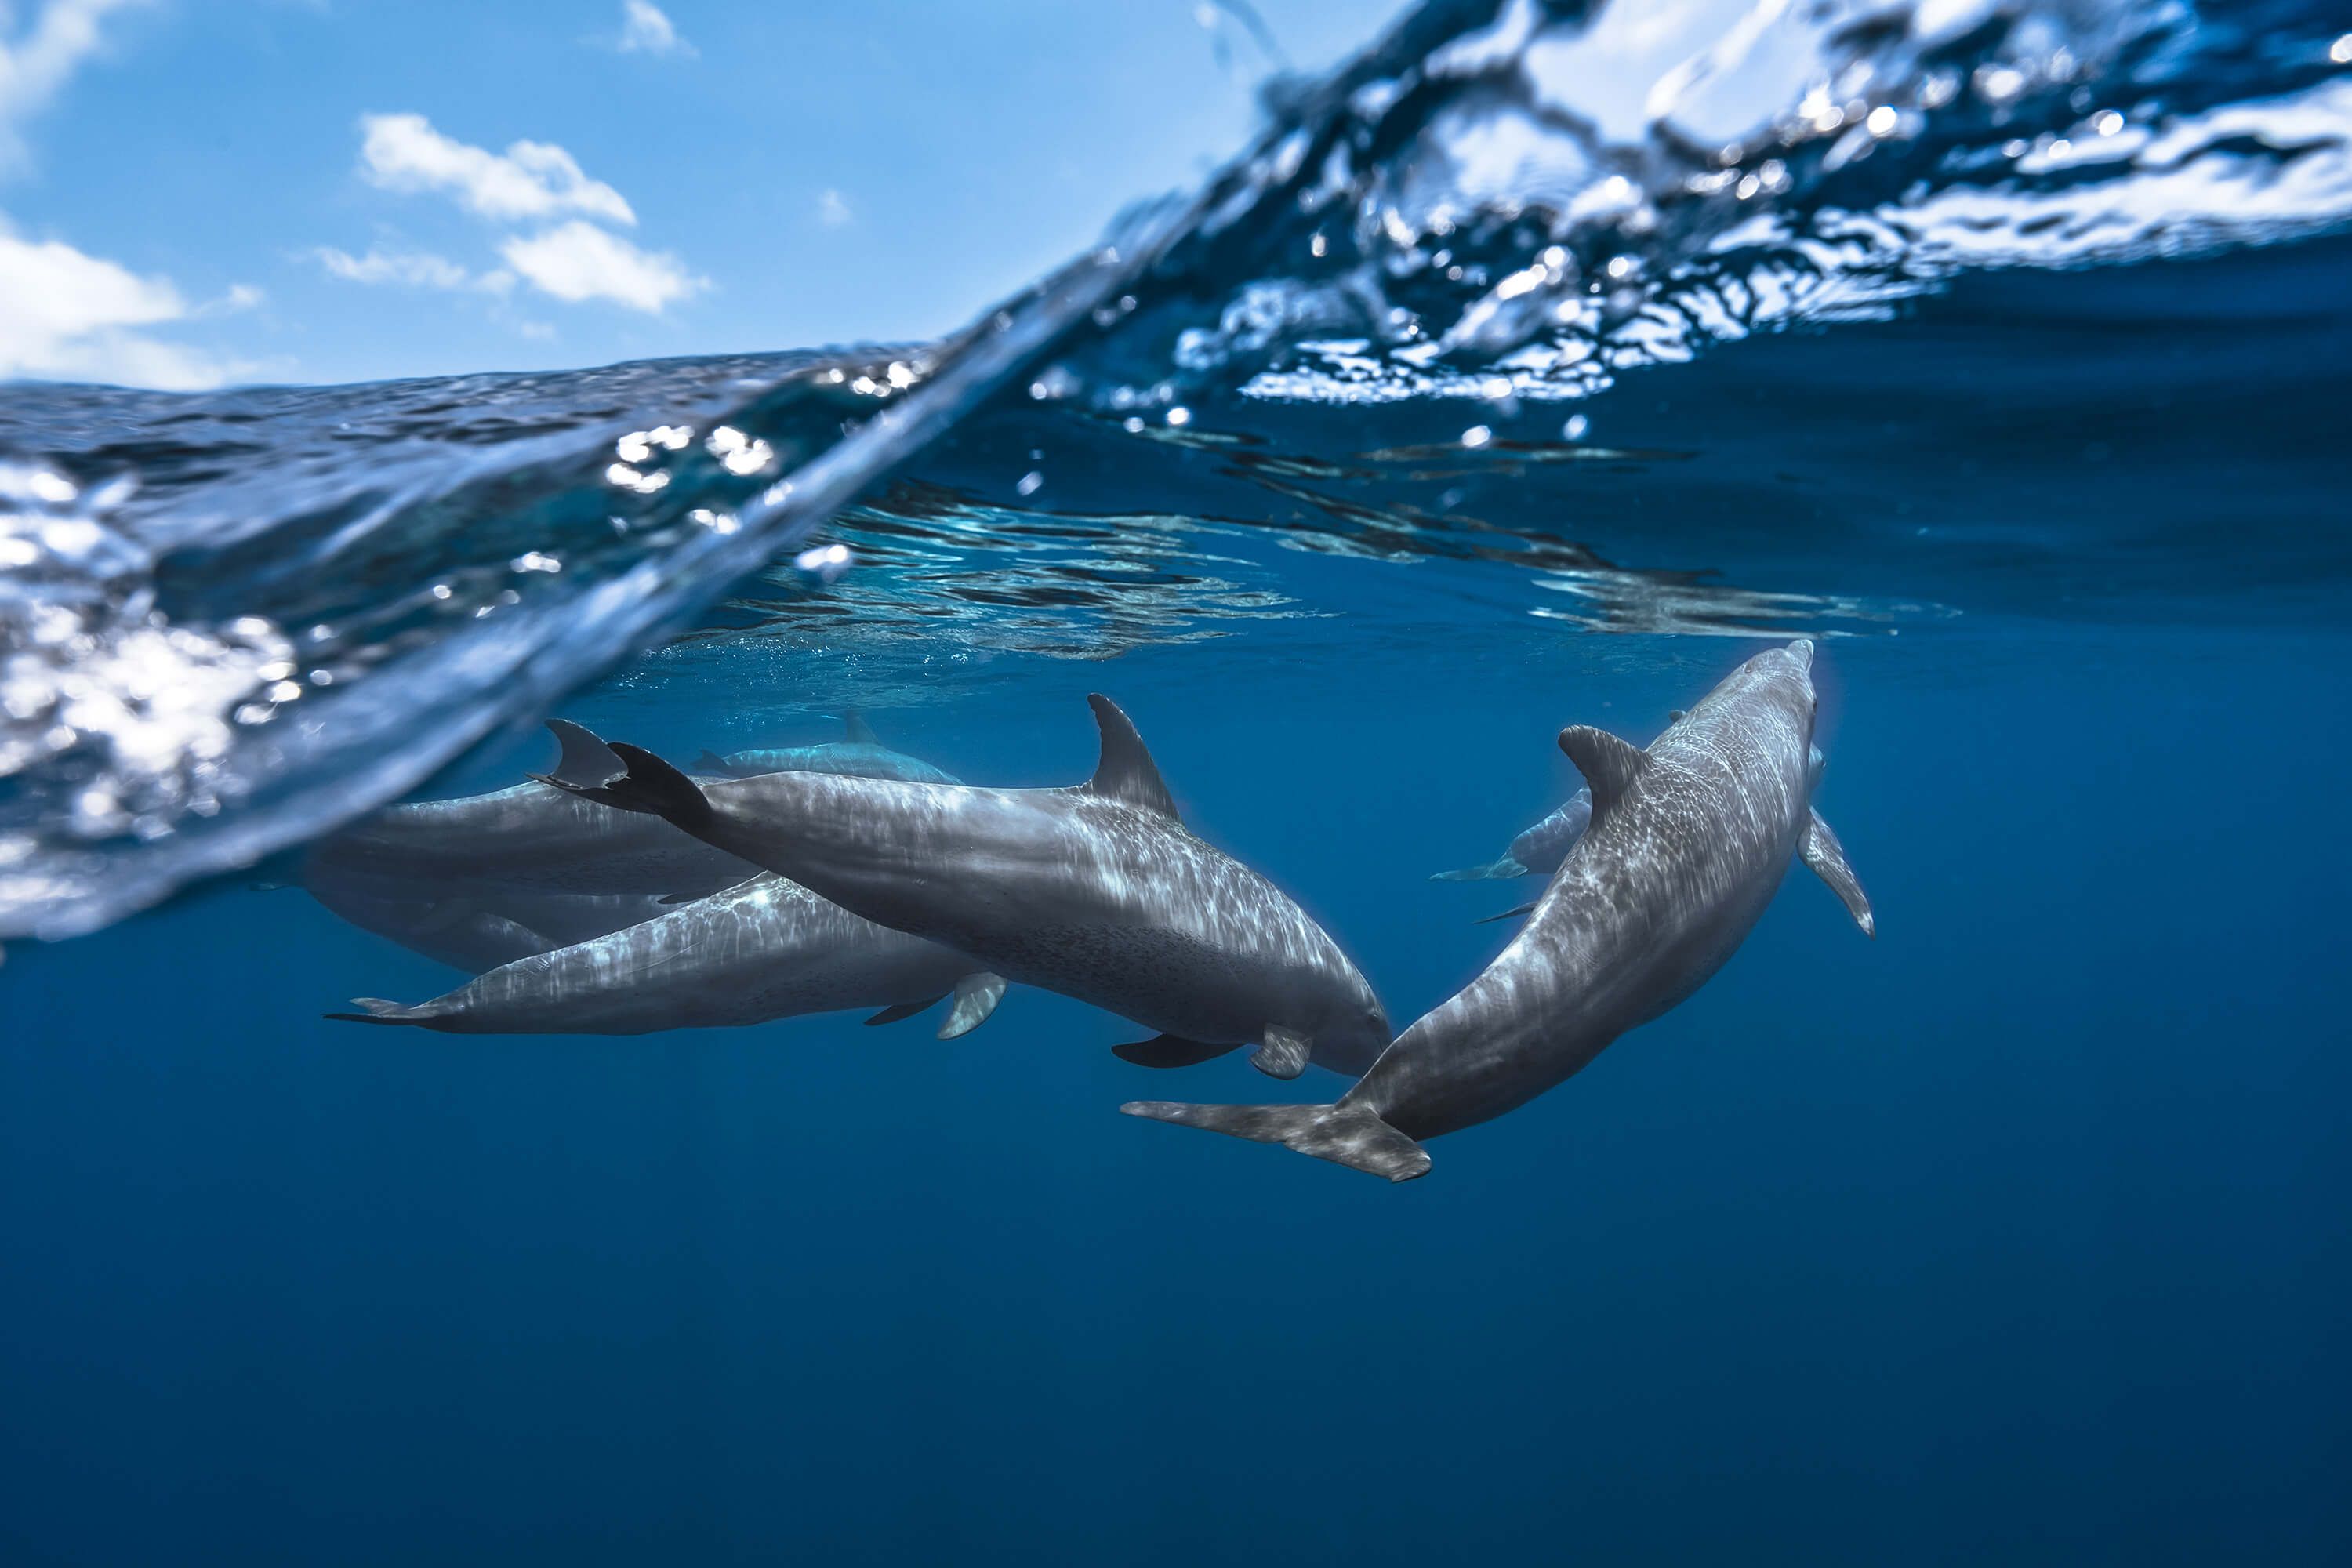 Underwater Dolphins